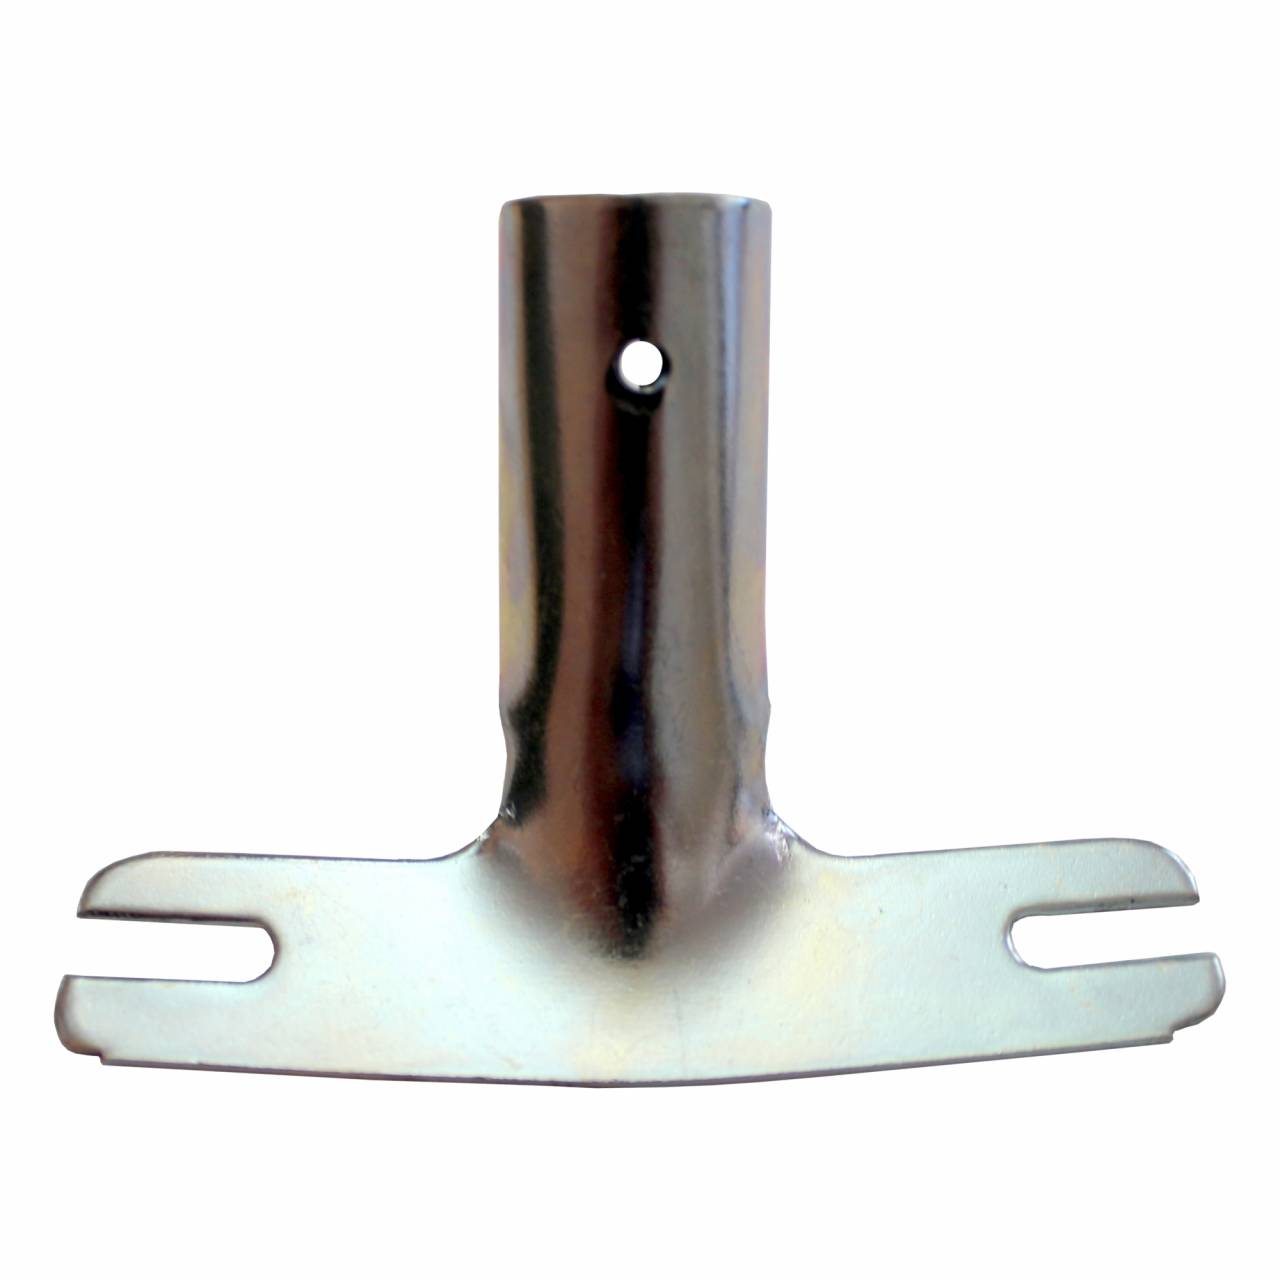 Metall-Stielhalter vz, für Besen-/ Gerätestiele bis Ø 24 mm